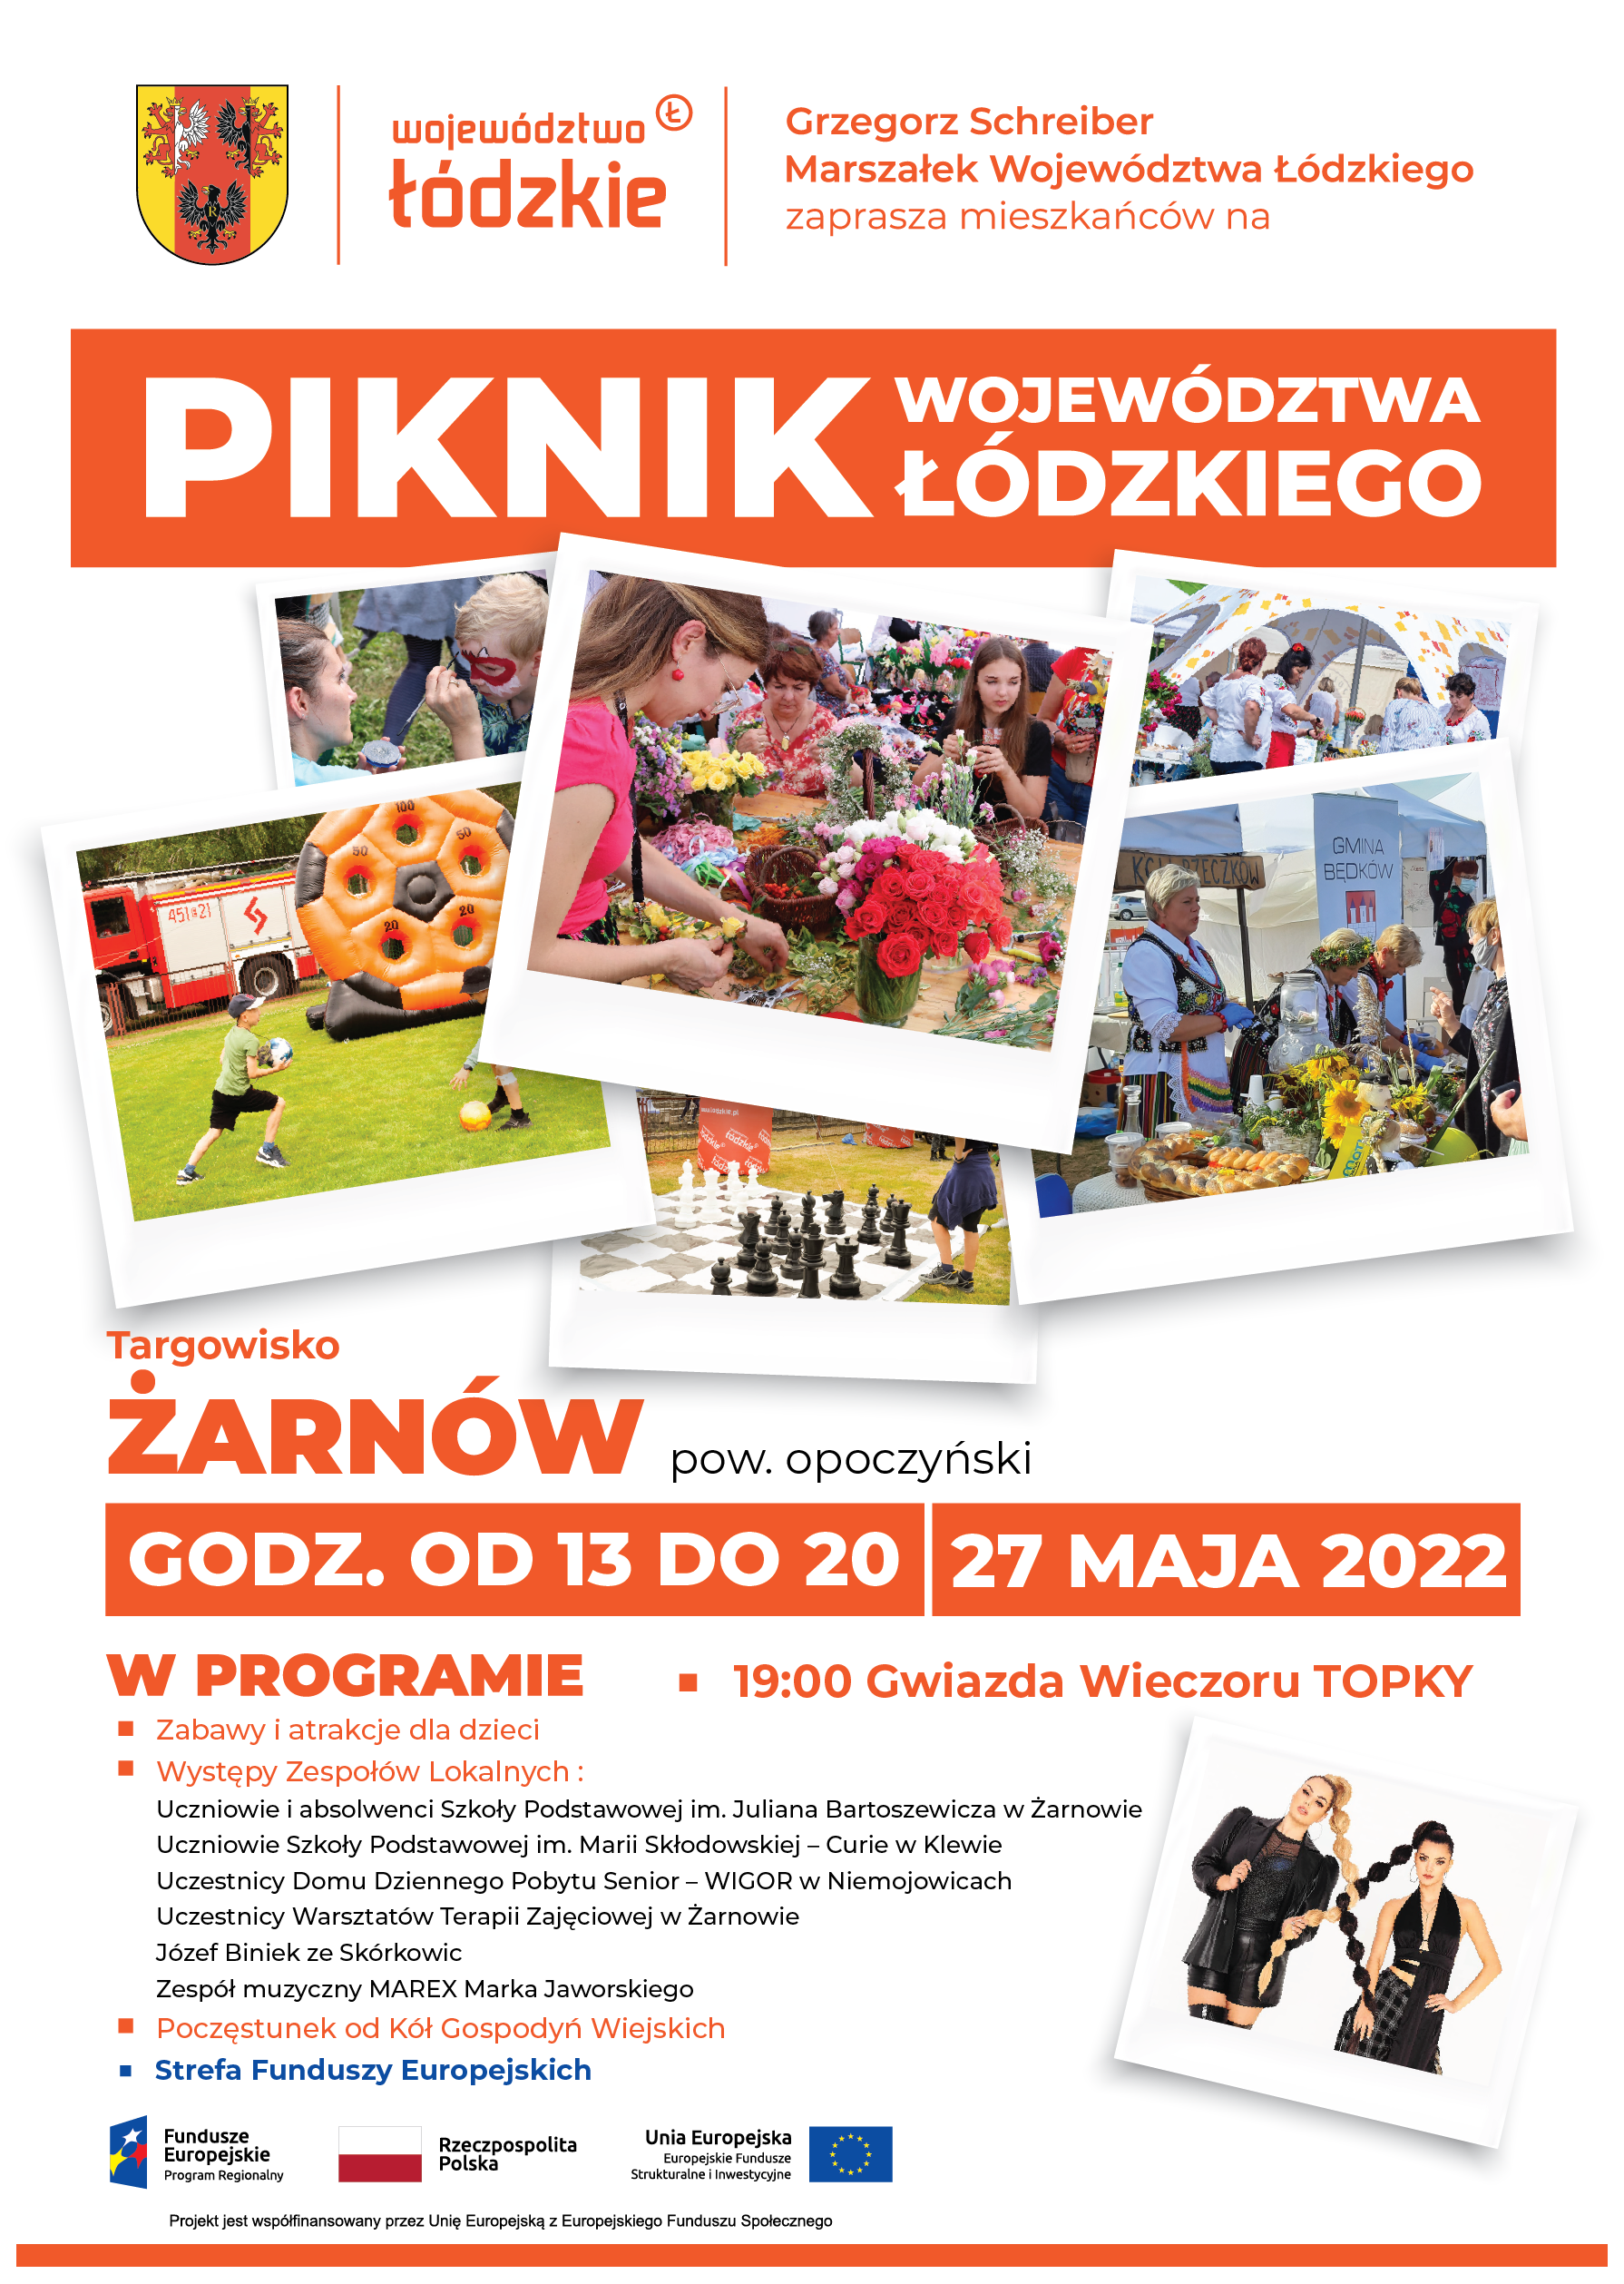 Plakat dotyczący pikniku w Żarnowie